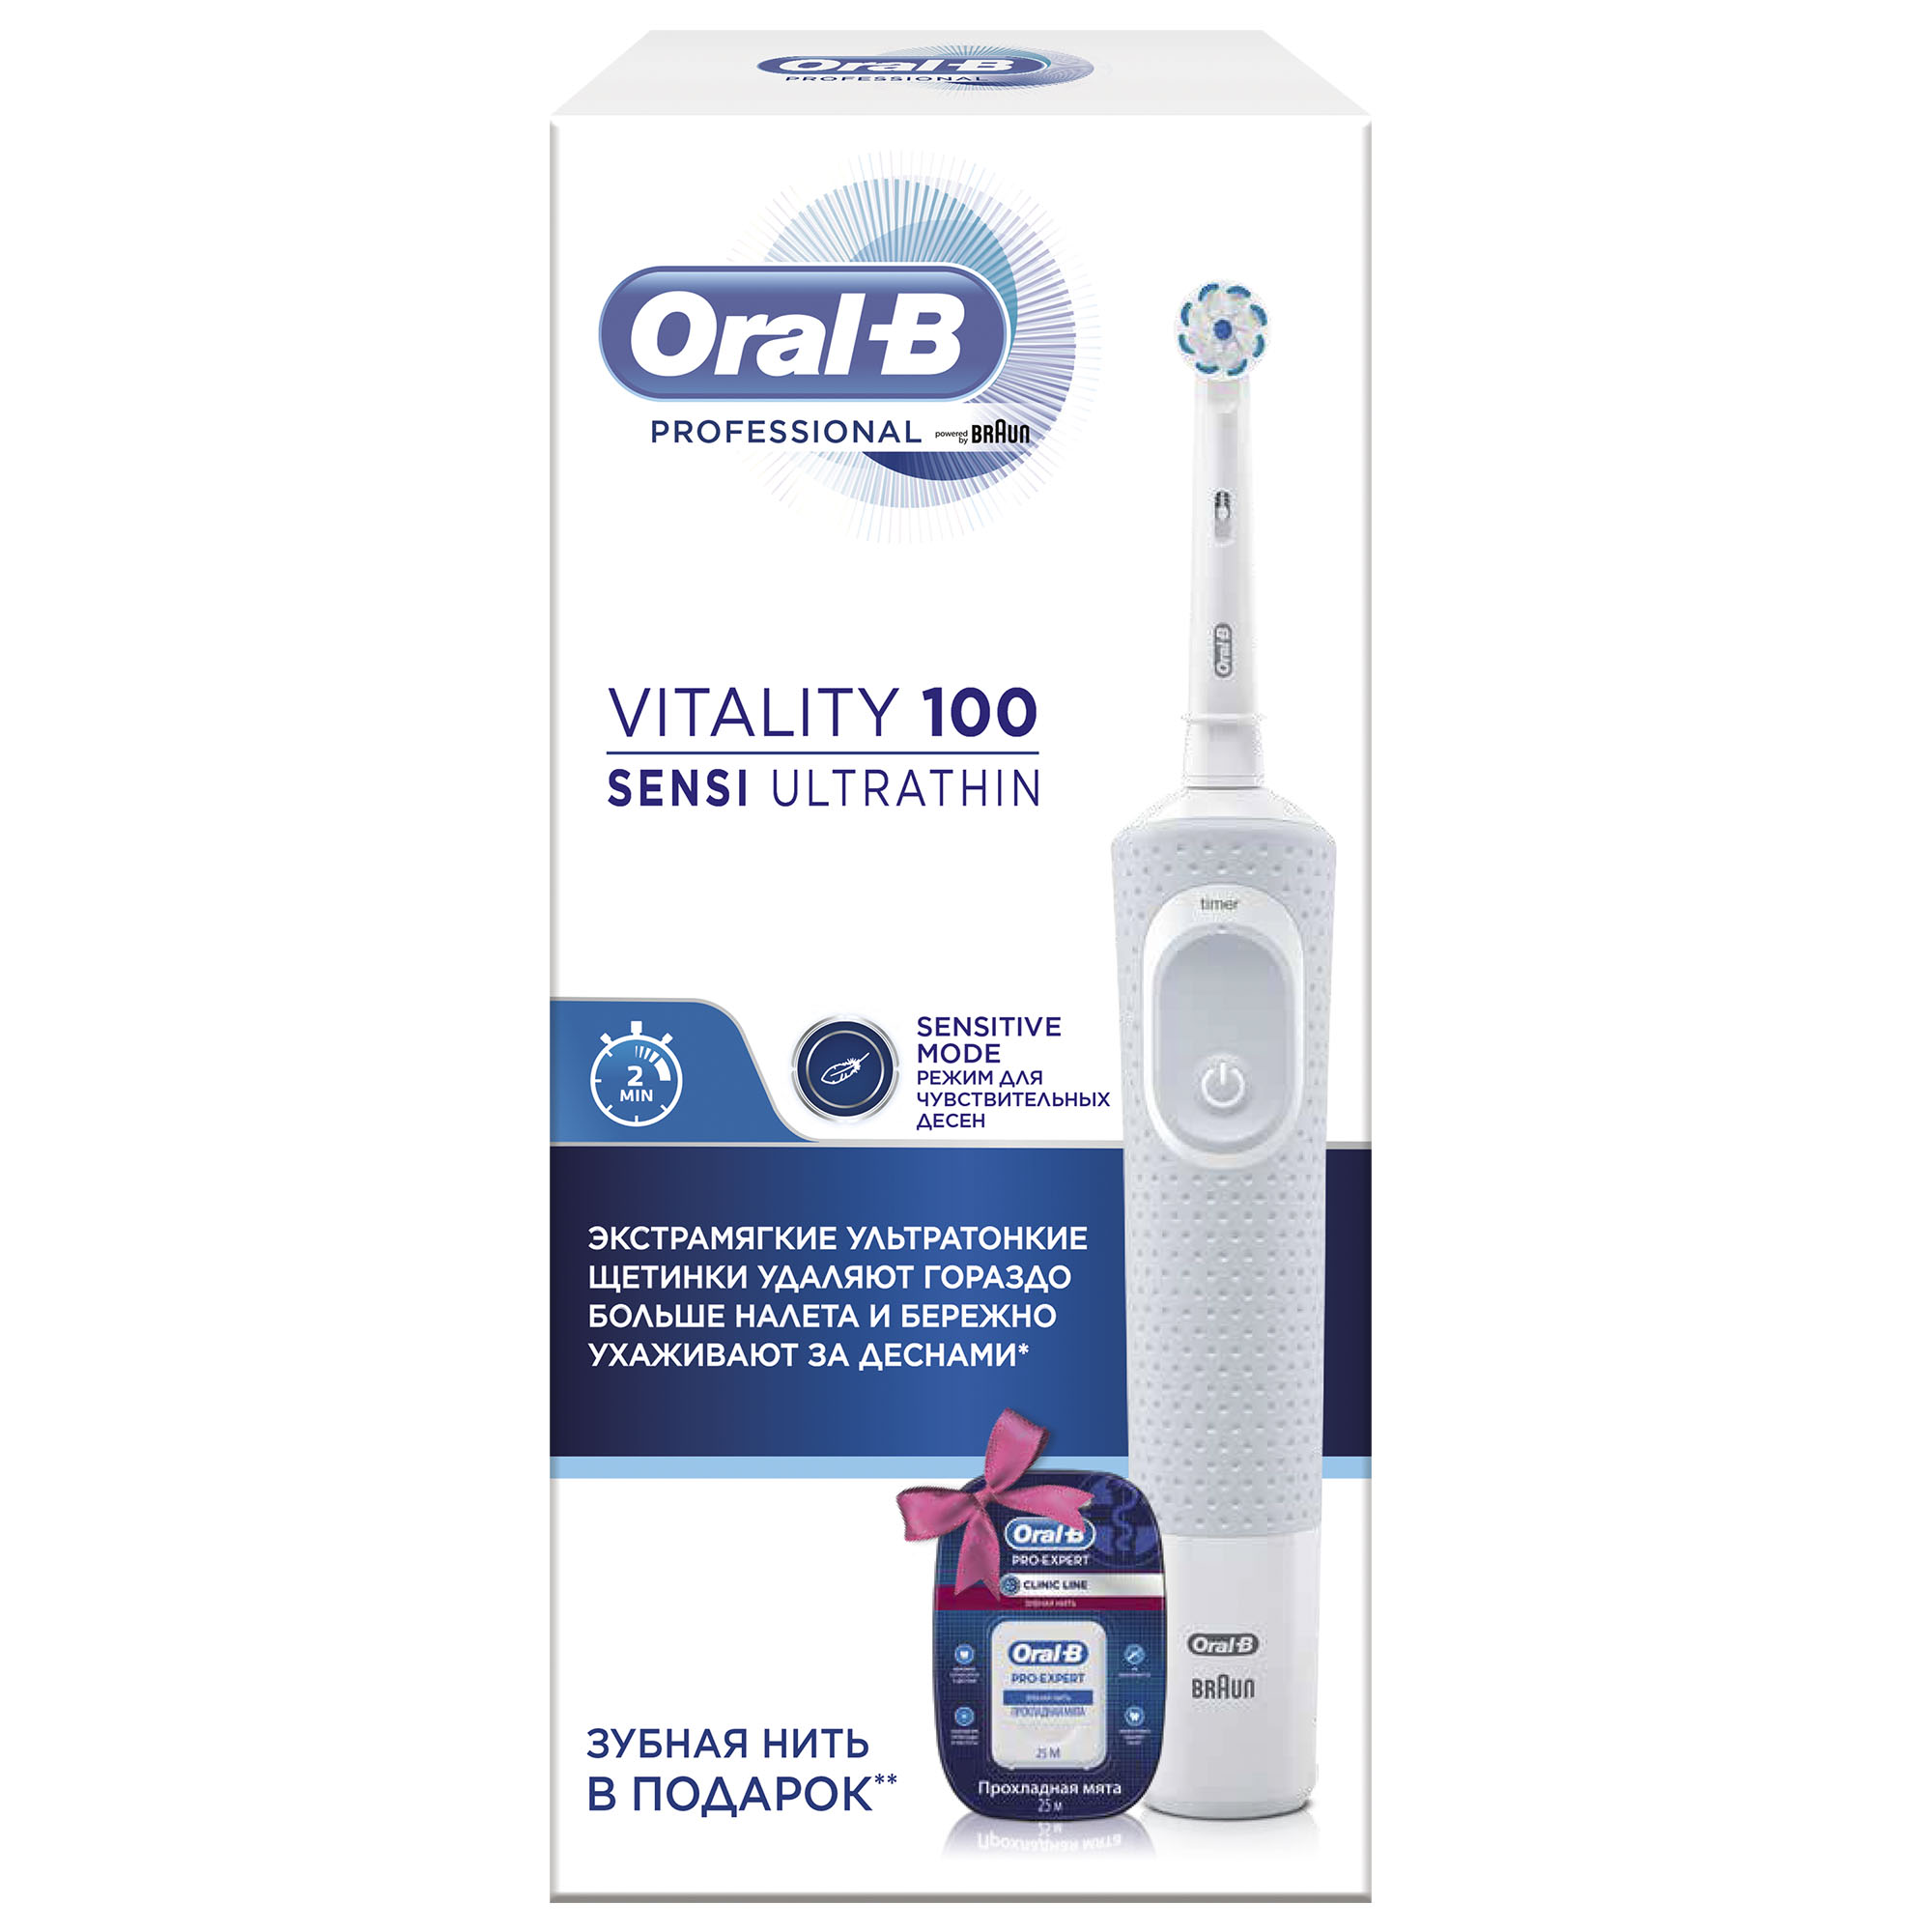 Зубная щетка oral b электрическая виталити цена звуковые зубные щетки отзывы